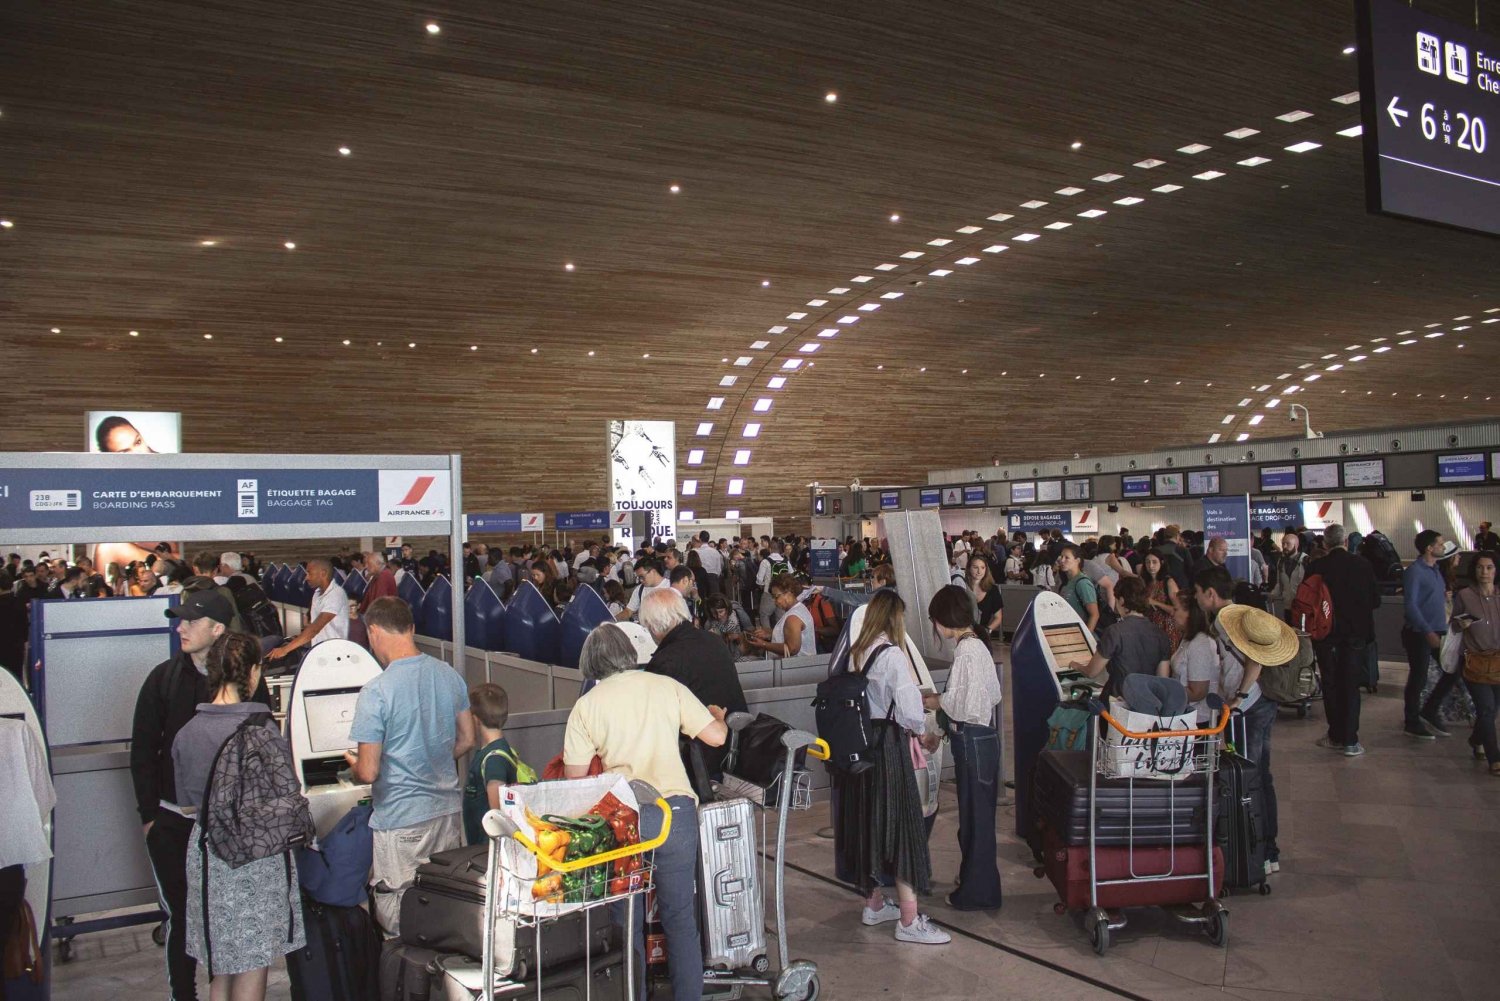 Munique: Assistente Meet & Greet no aeroporto